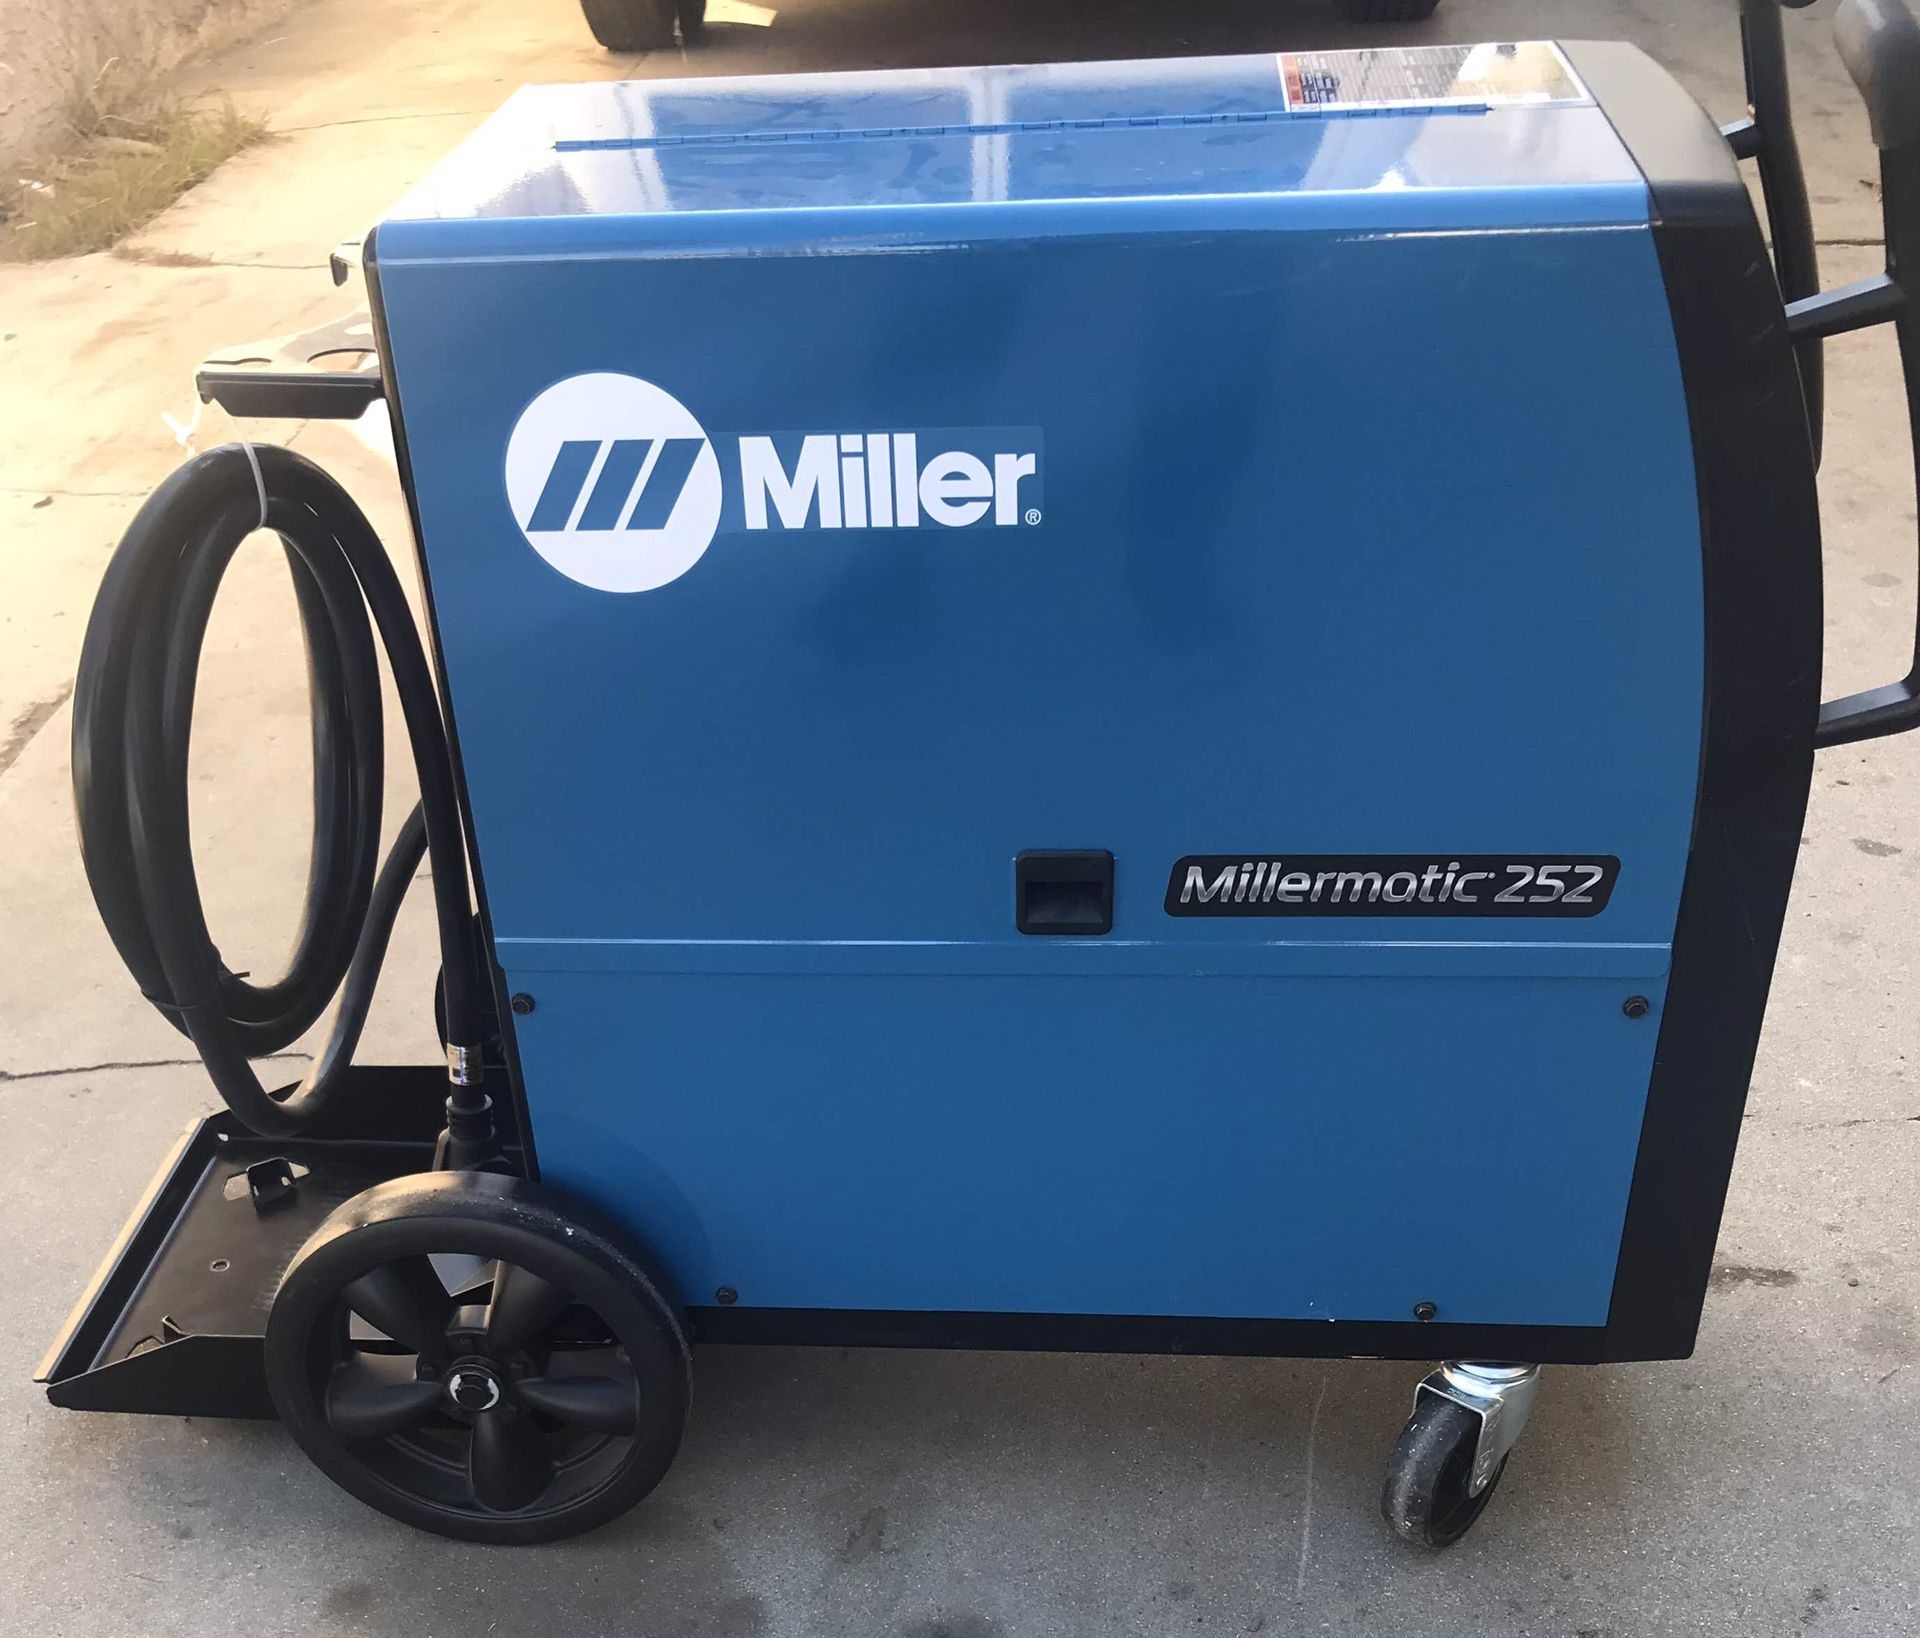 Miller 252 welder